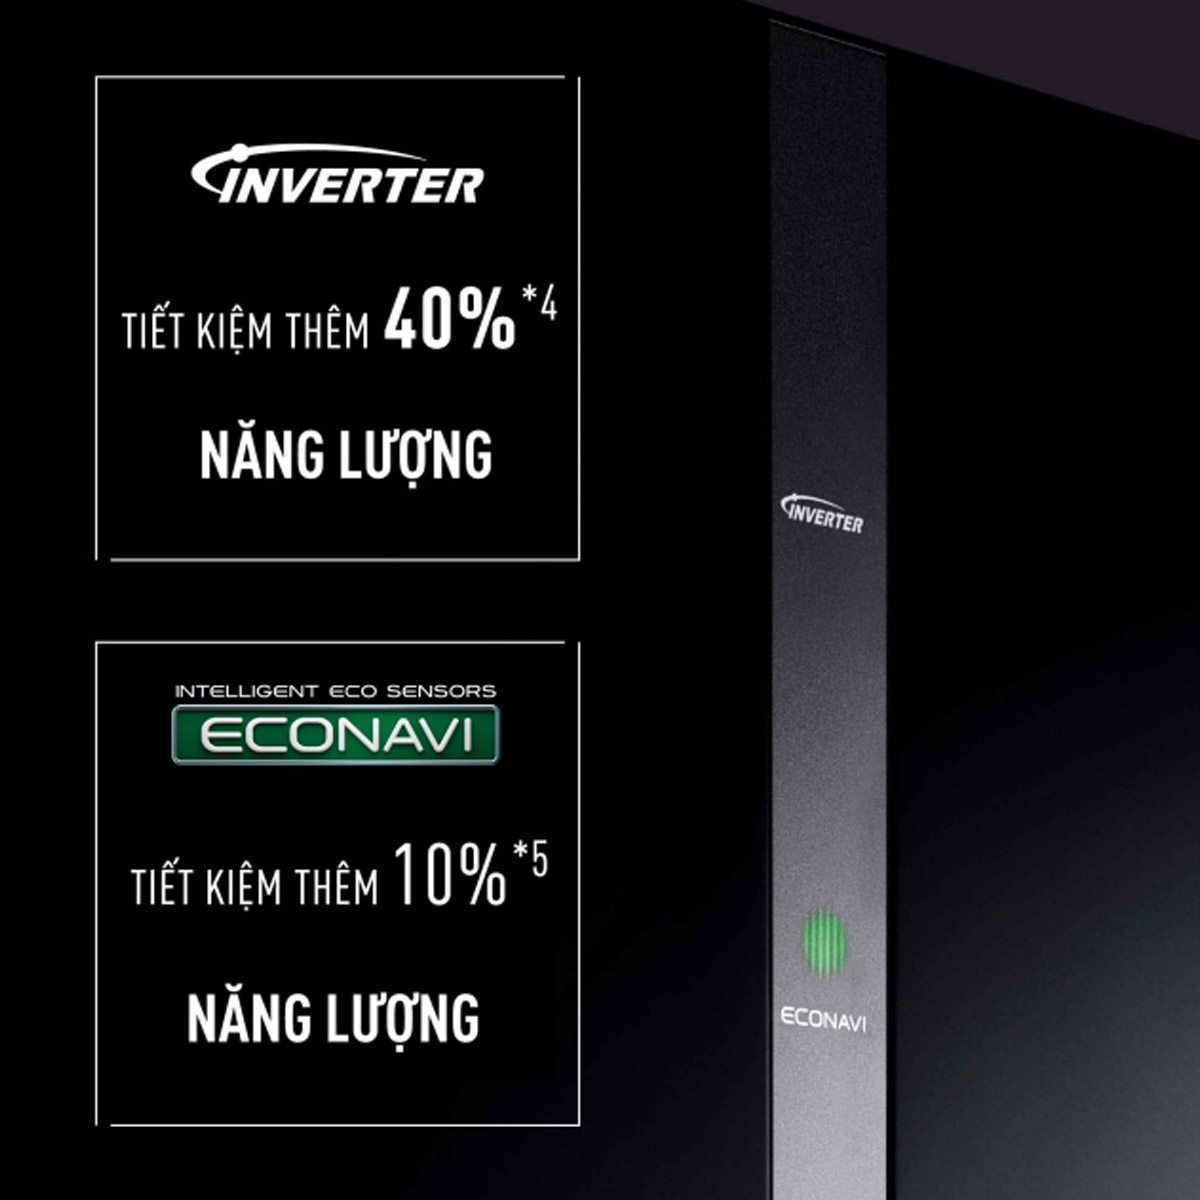 Tủ Lạnh NR-BX421WGKV được tích hợp công nghệ Inverter và ECONAVI